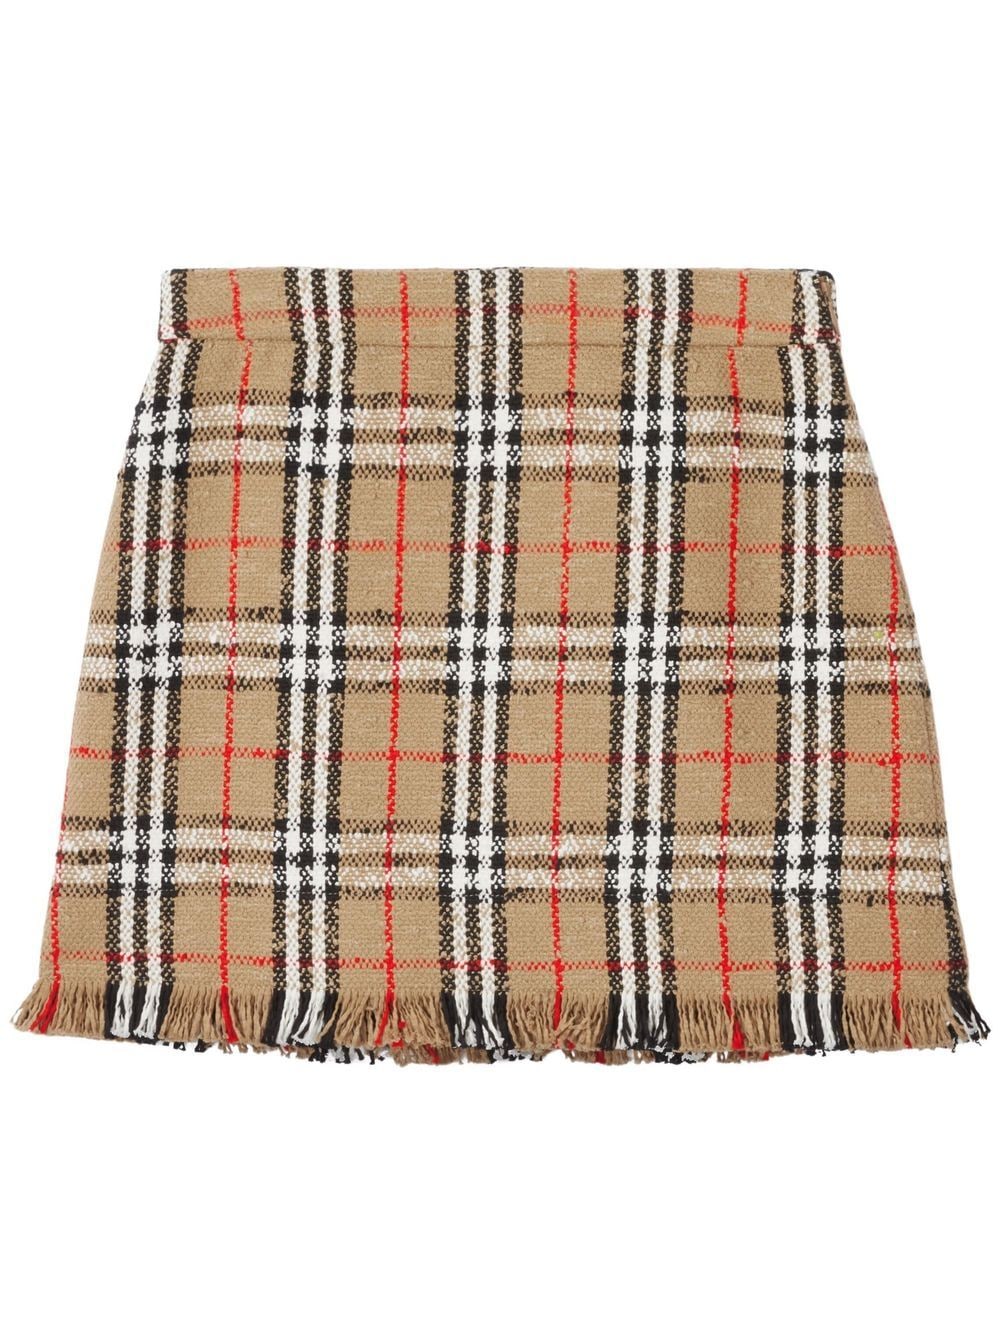 Vintage Check bouclé mini skirt